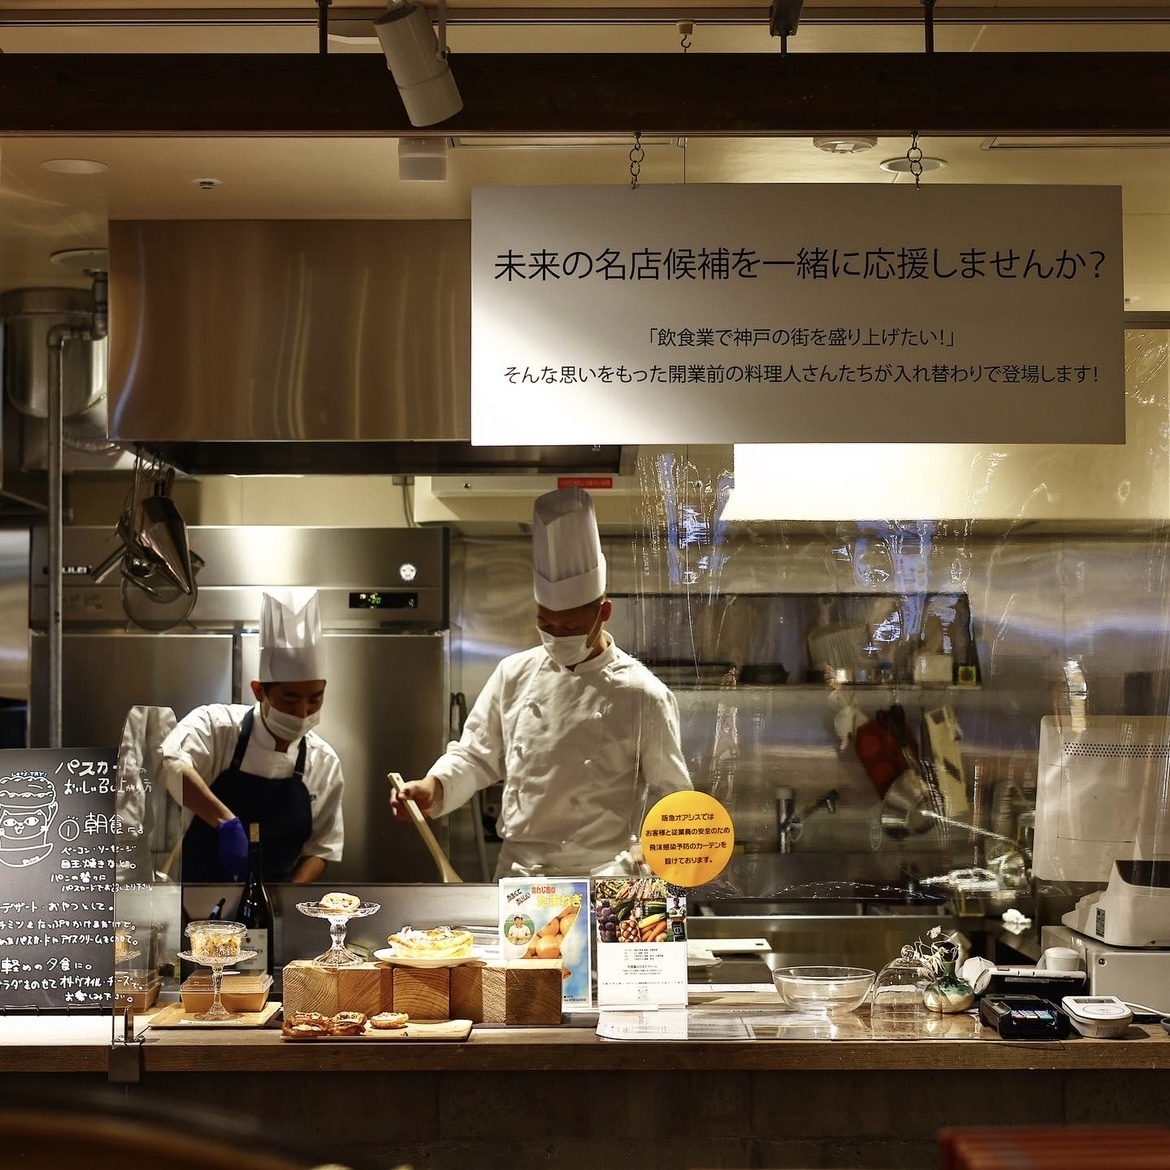 「将来飲食店を開業したい！」という料理人たちに向けたサポートを行う一画。